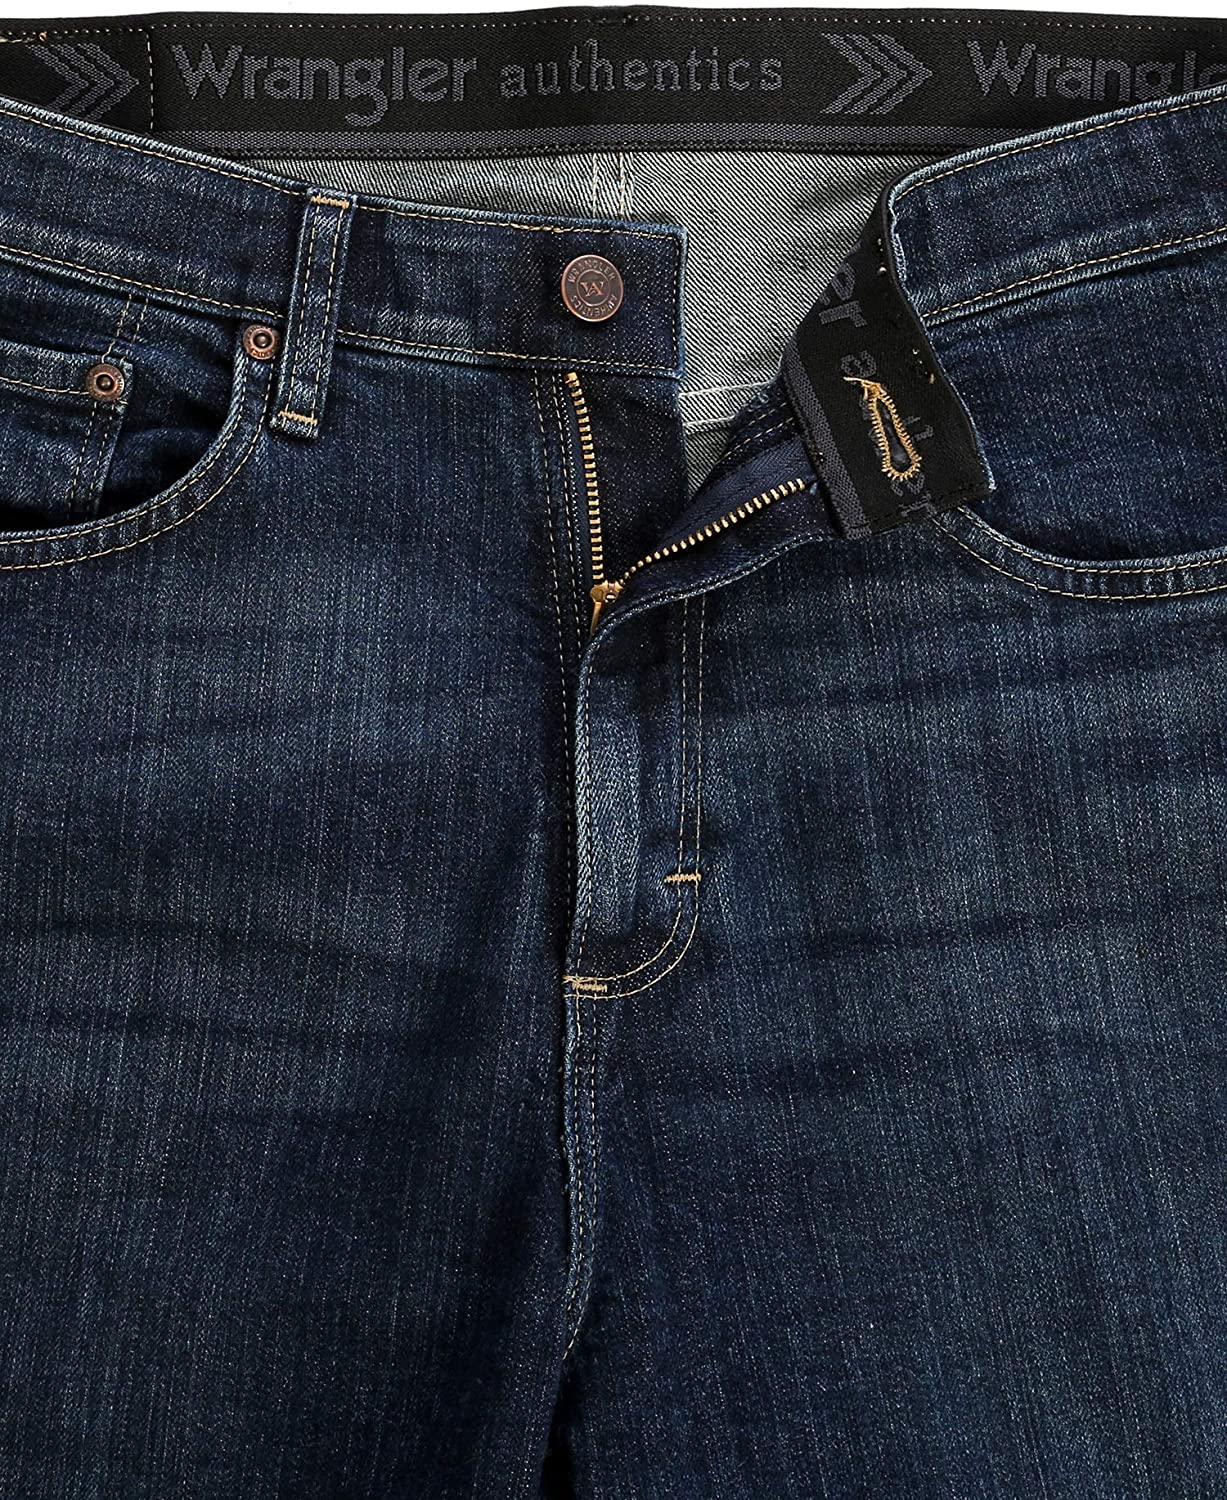 Wrangler Men's Comfort Flex Waistband Short, Flex Dark, Size 32 R6Vw | eBay